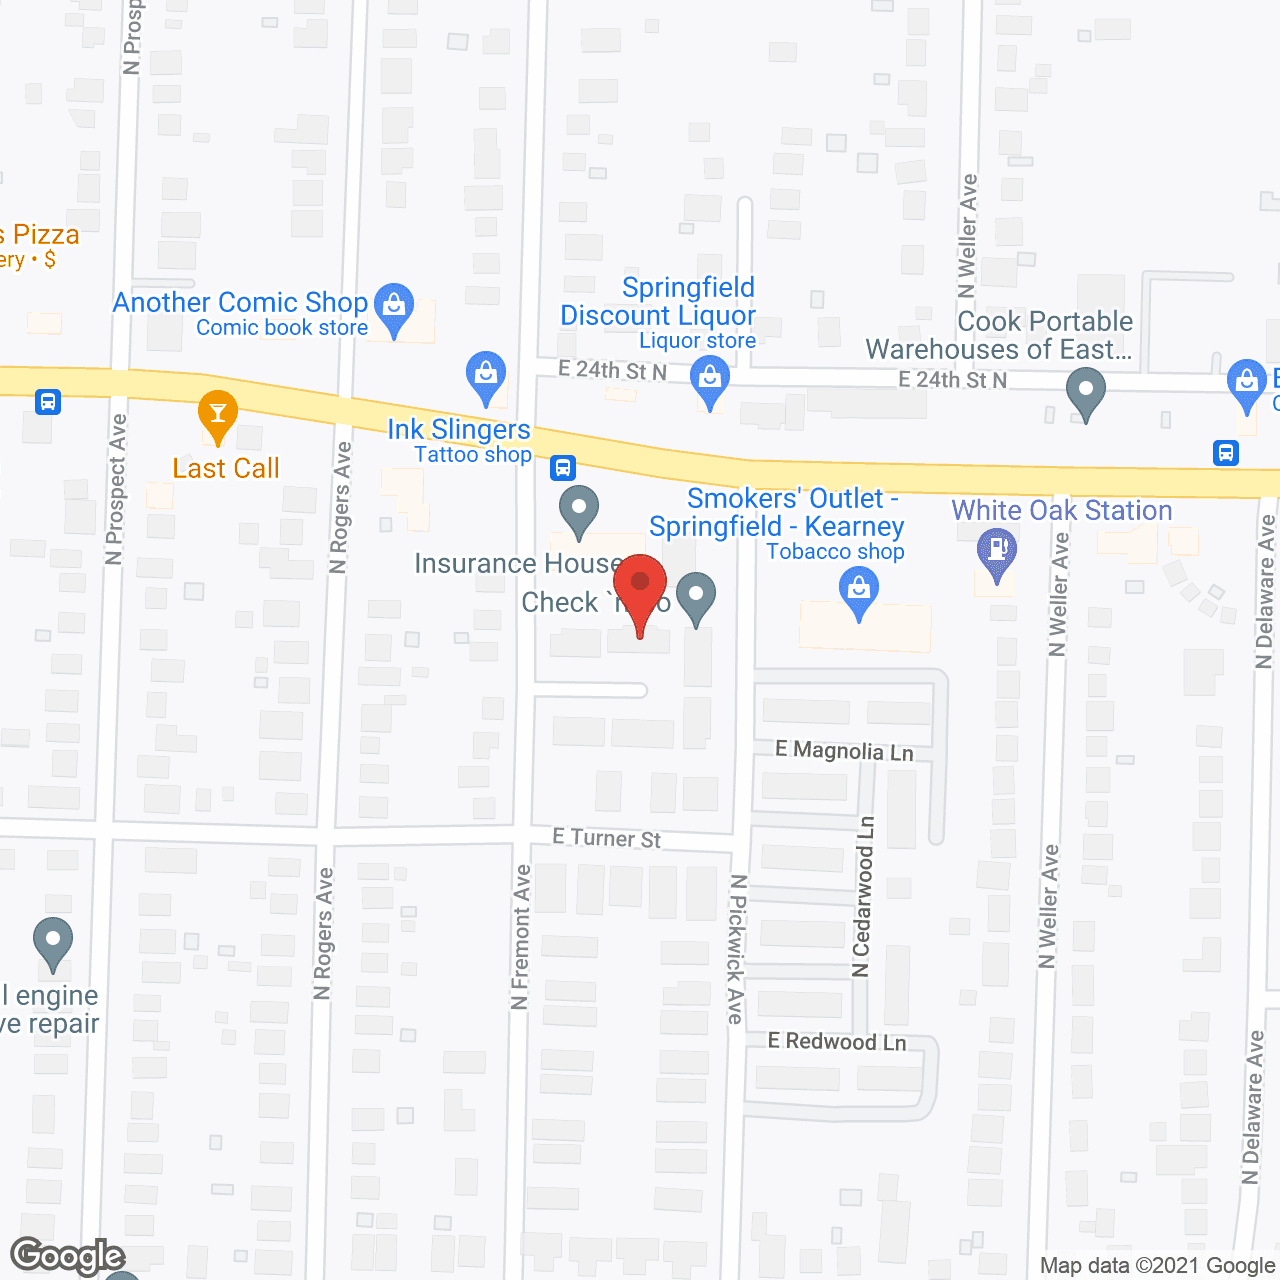 Kearney Villa in google map